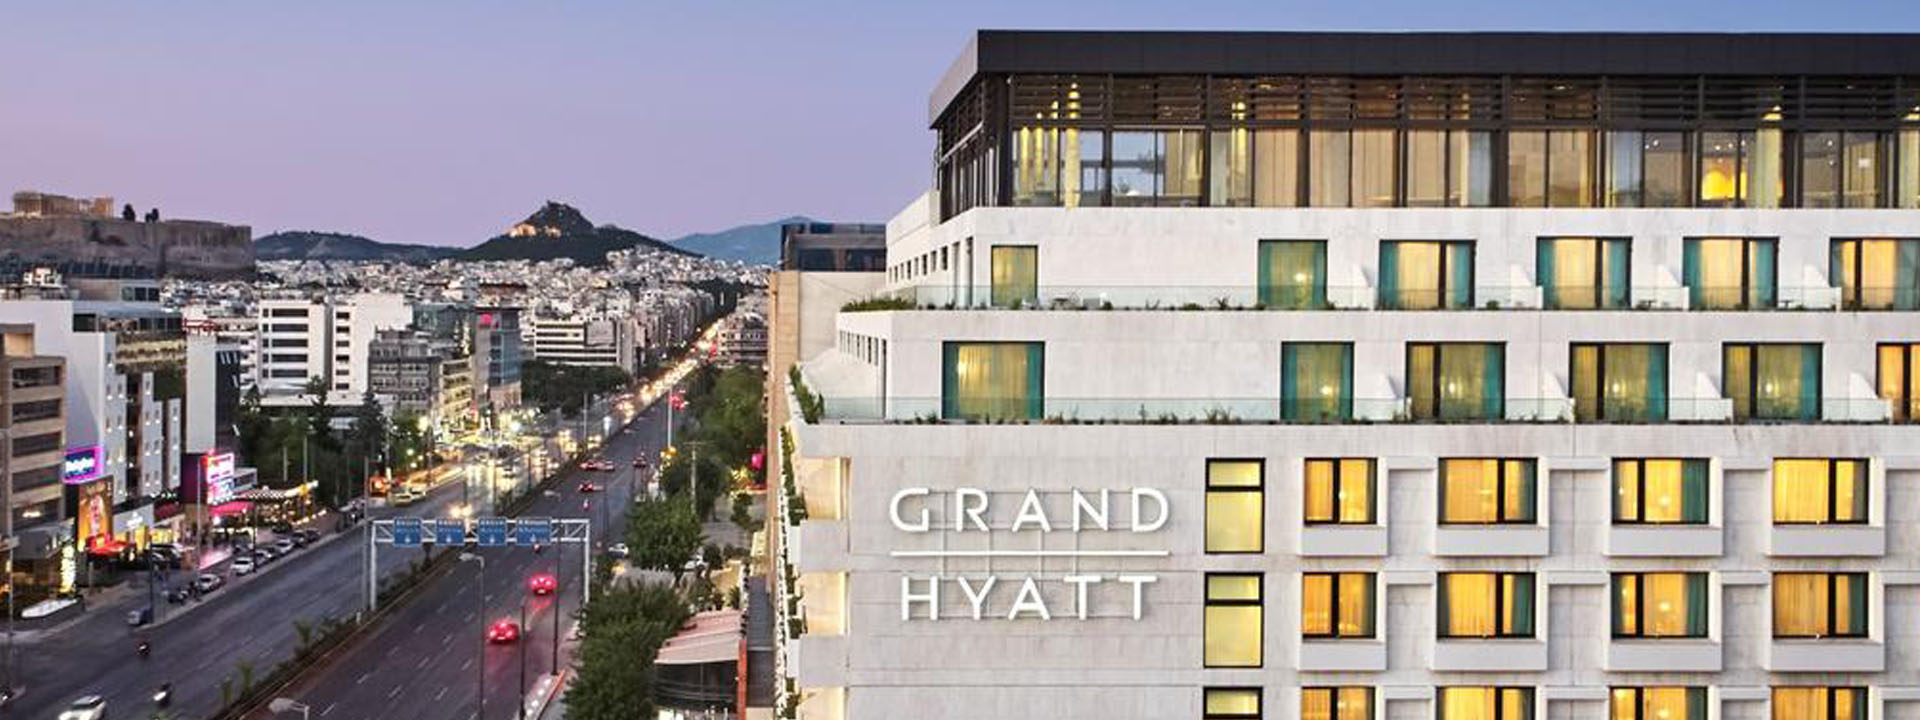 Grand Hyatt Athens